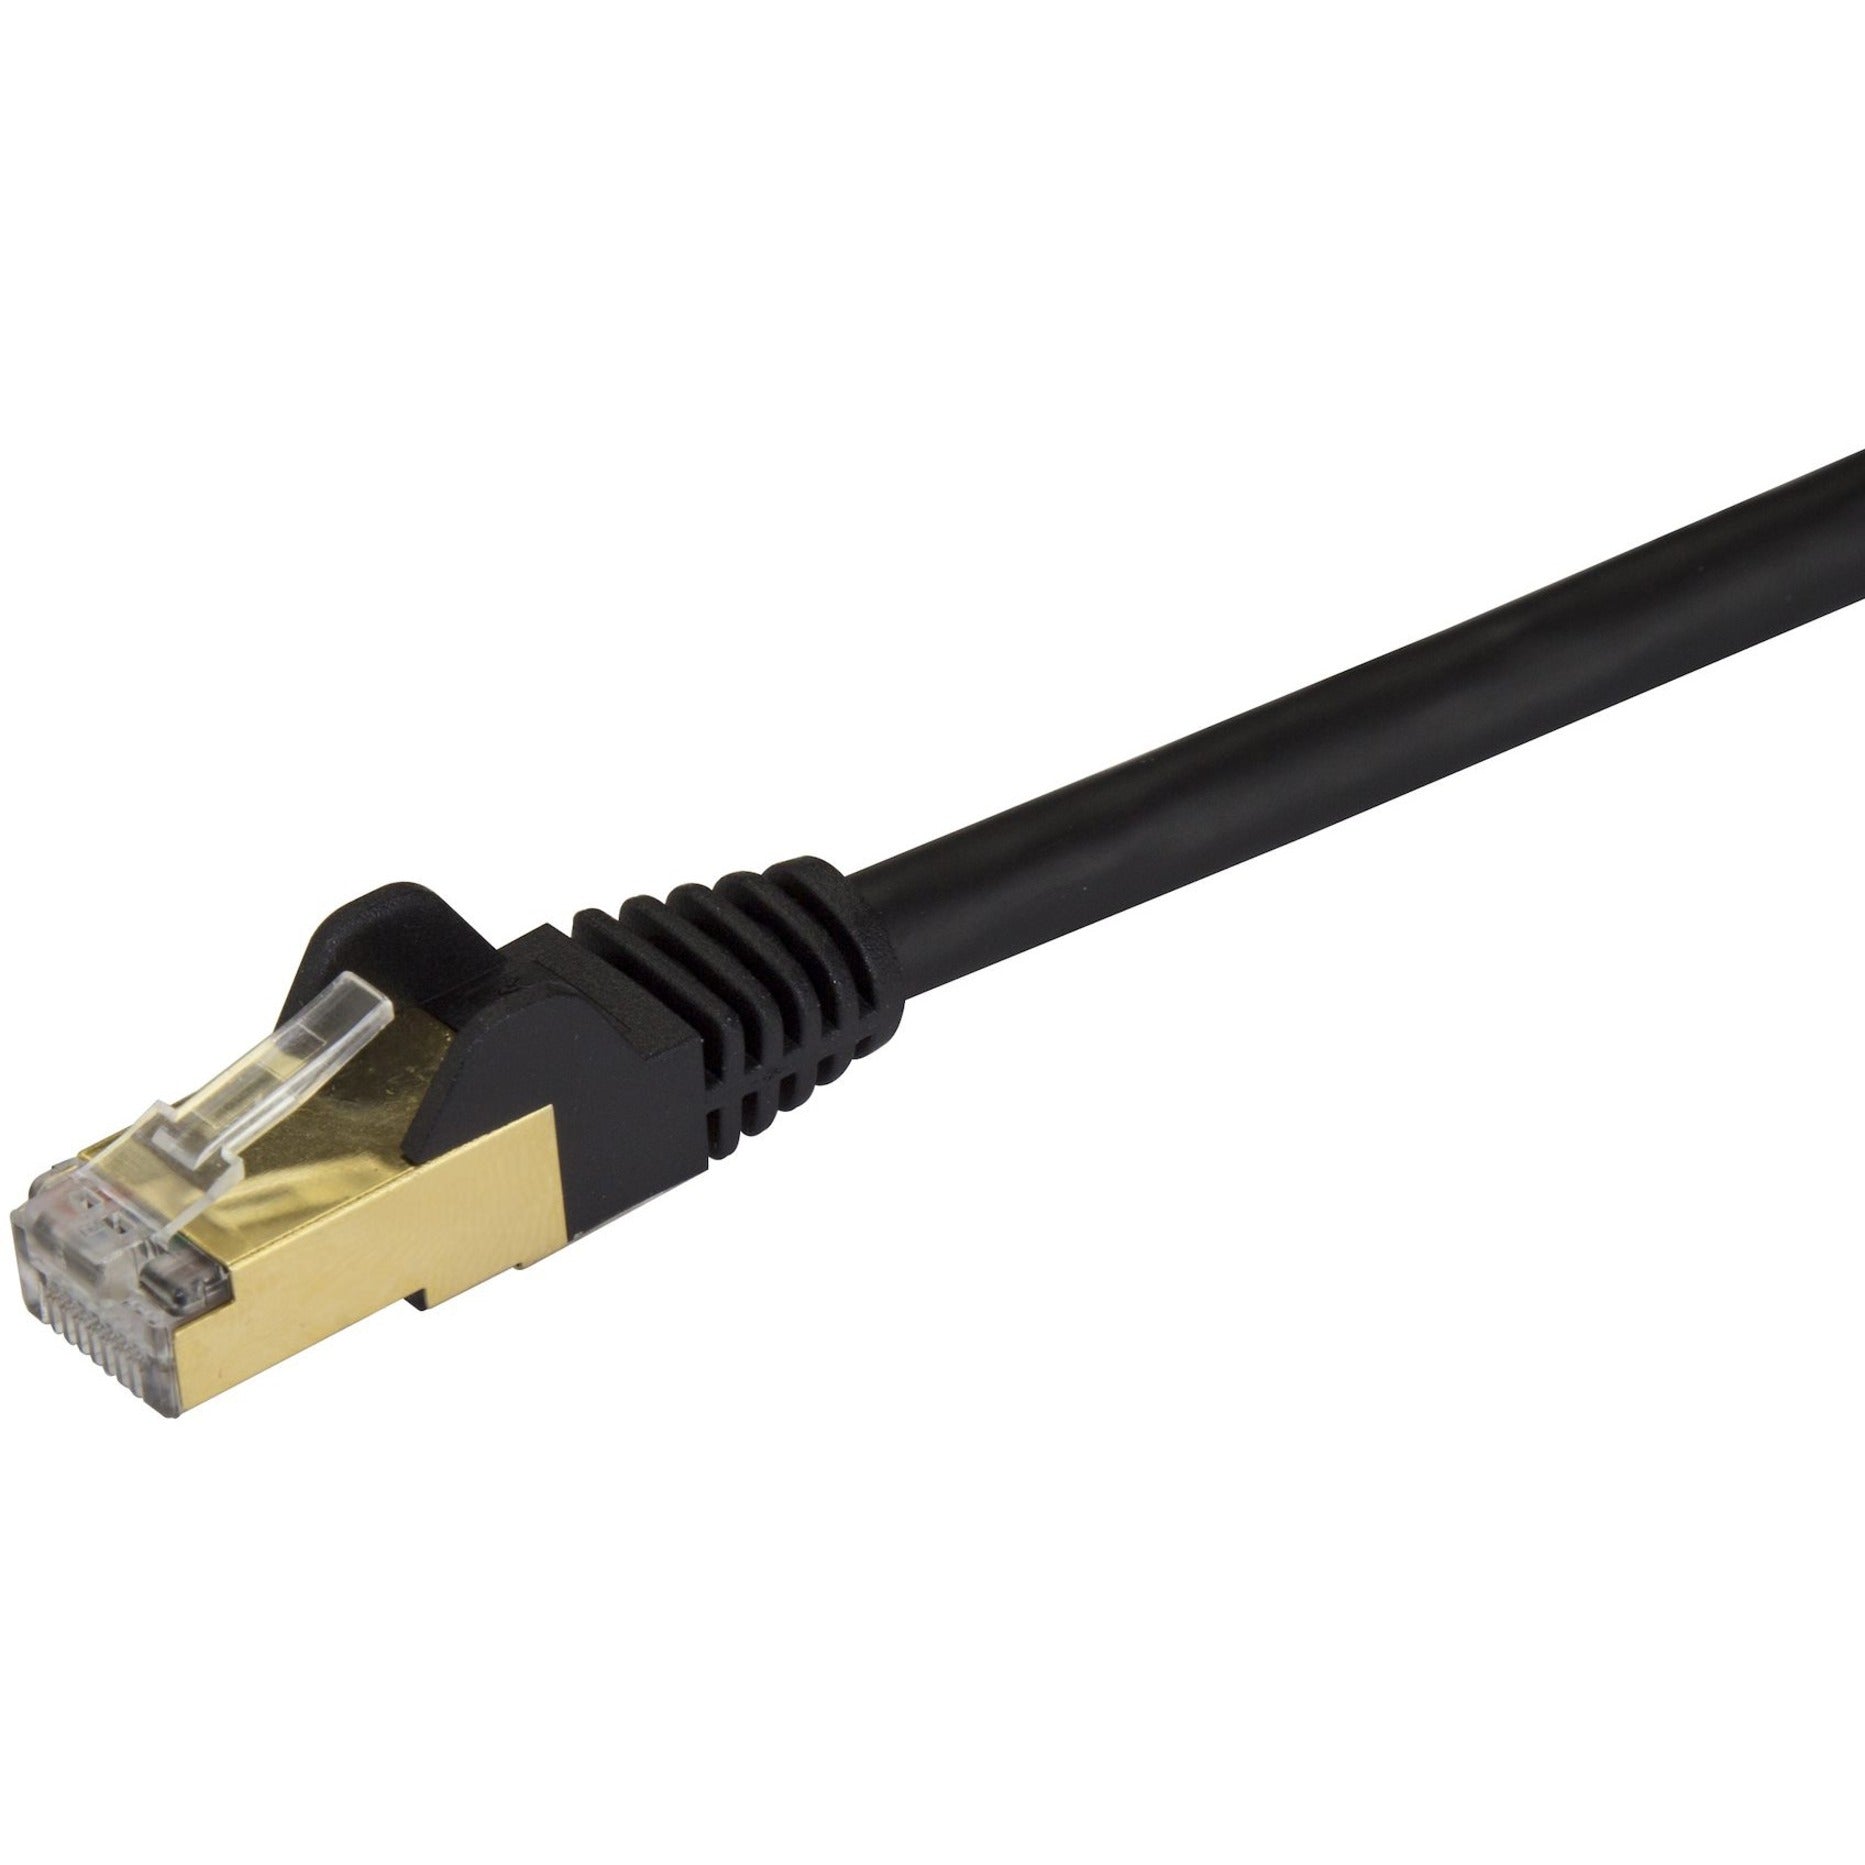 StarTech.com C6ASPAT15BK Cat6a Ethernet Patch Cable - Shielded (STP) - 15 ft., Black, Long Ethernet Cord